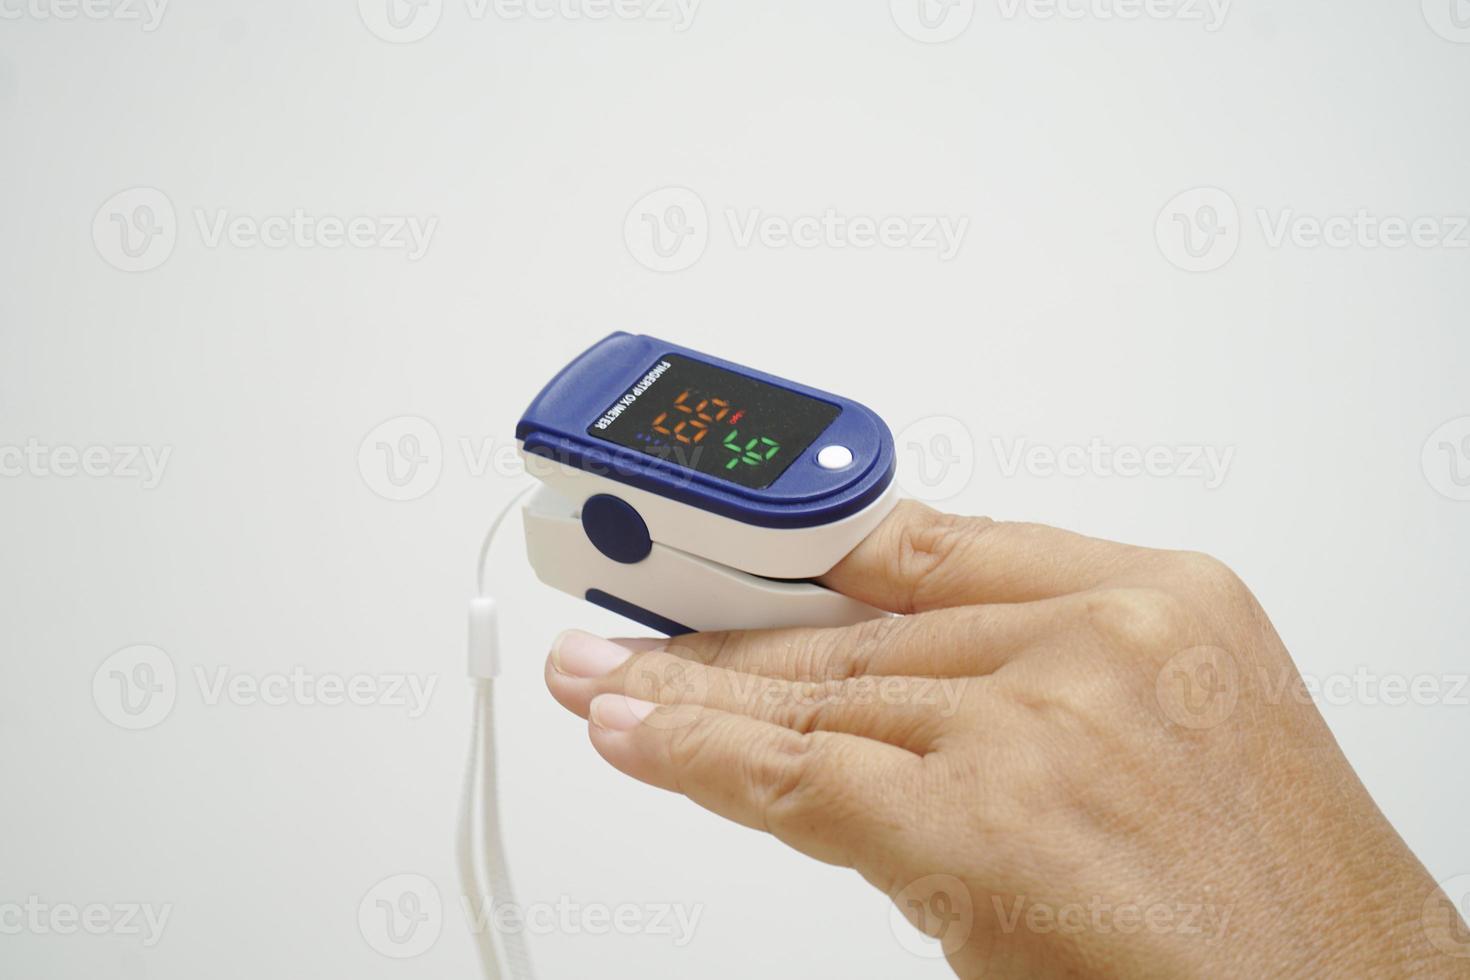 appareil numérique d'oxymètre de pouls pour mesurer la saturation en oxygène dans le sang et le pouls. photo